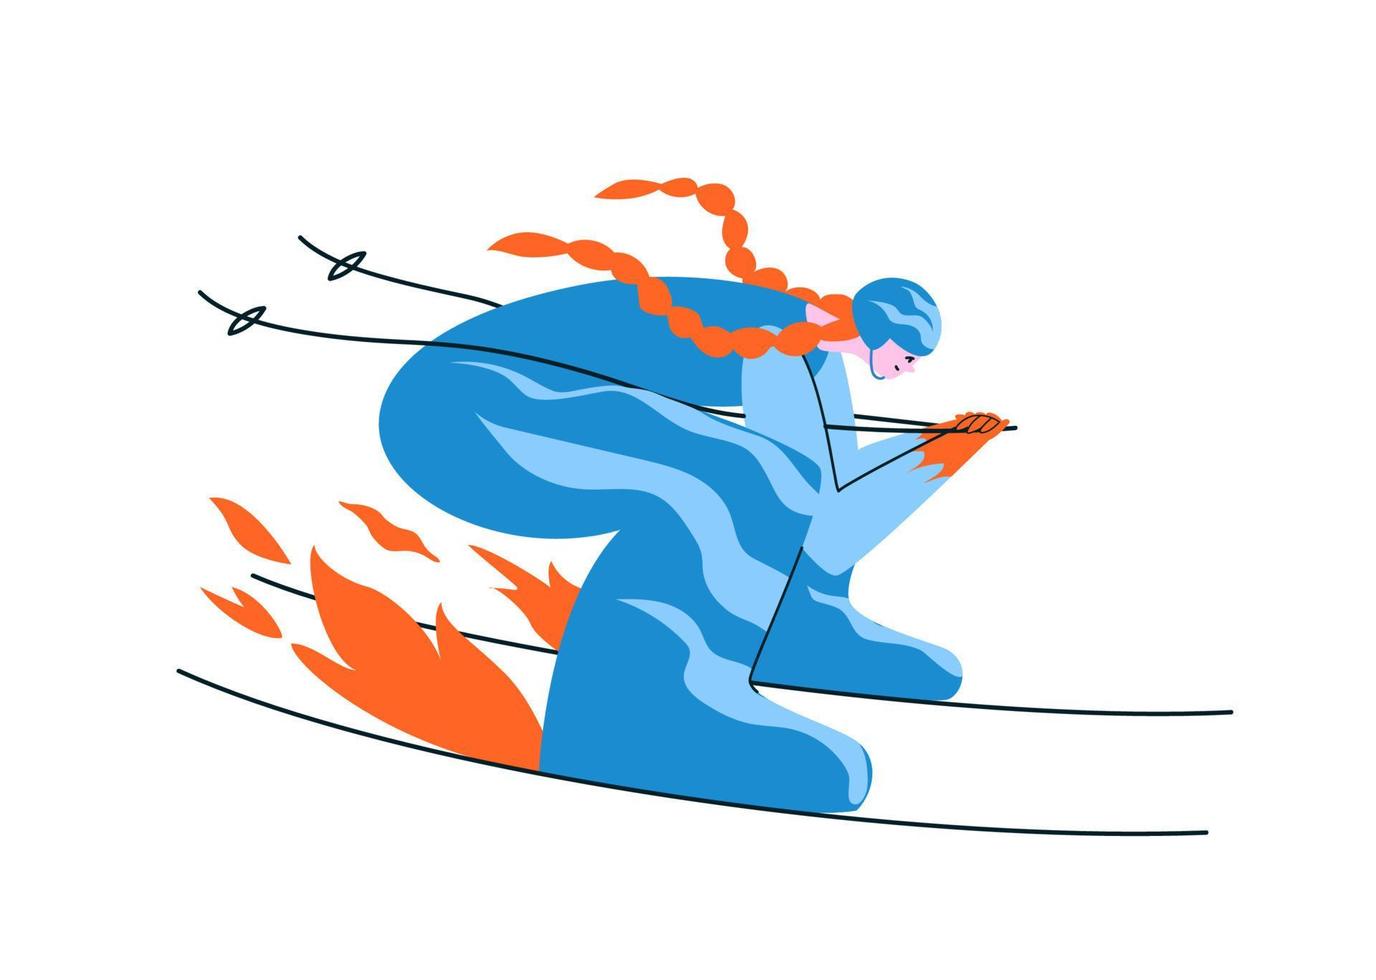 handgetekende roodharige meisje skiër in een blauw pak. een jonge vrouw skiet in een aerodynamische pose op volle snelheid dat het vuur onder de ski's oplicht. vector voorraad illustratie in cartoon stijl op wit.